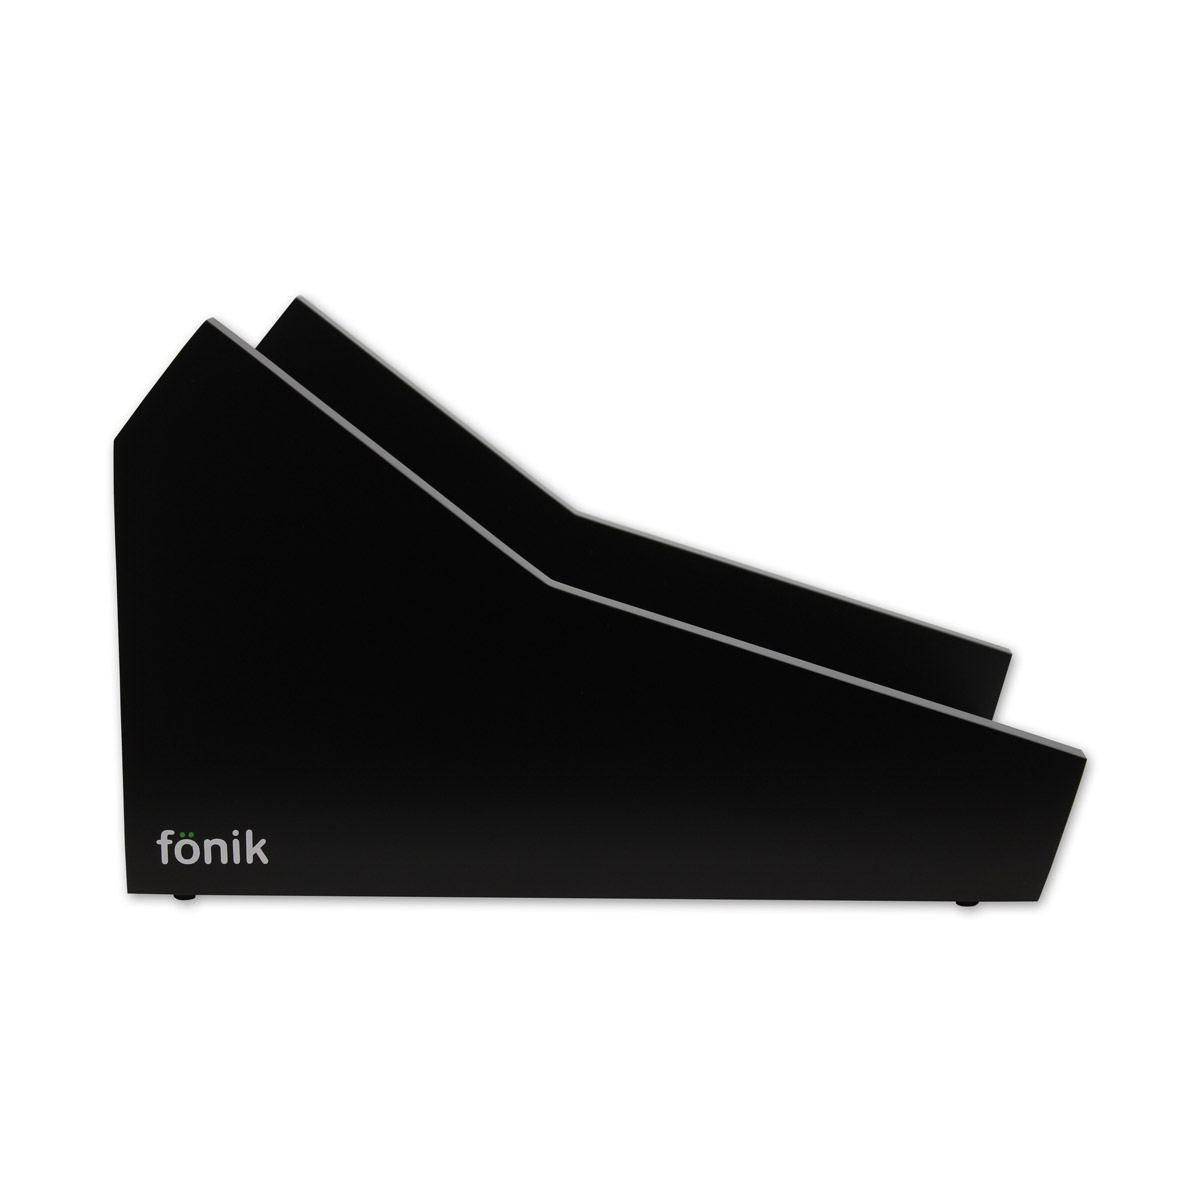 FONIK Audio Stand noir pour 2x Digitakt/Digitone 2 niveaux (vendus séparément)